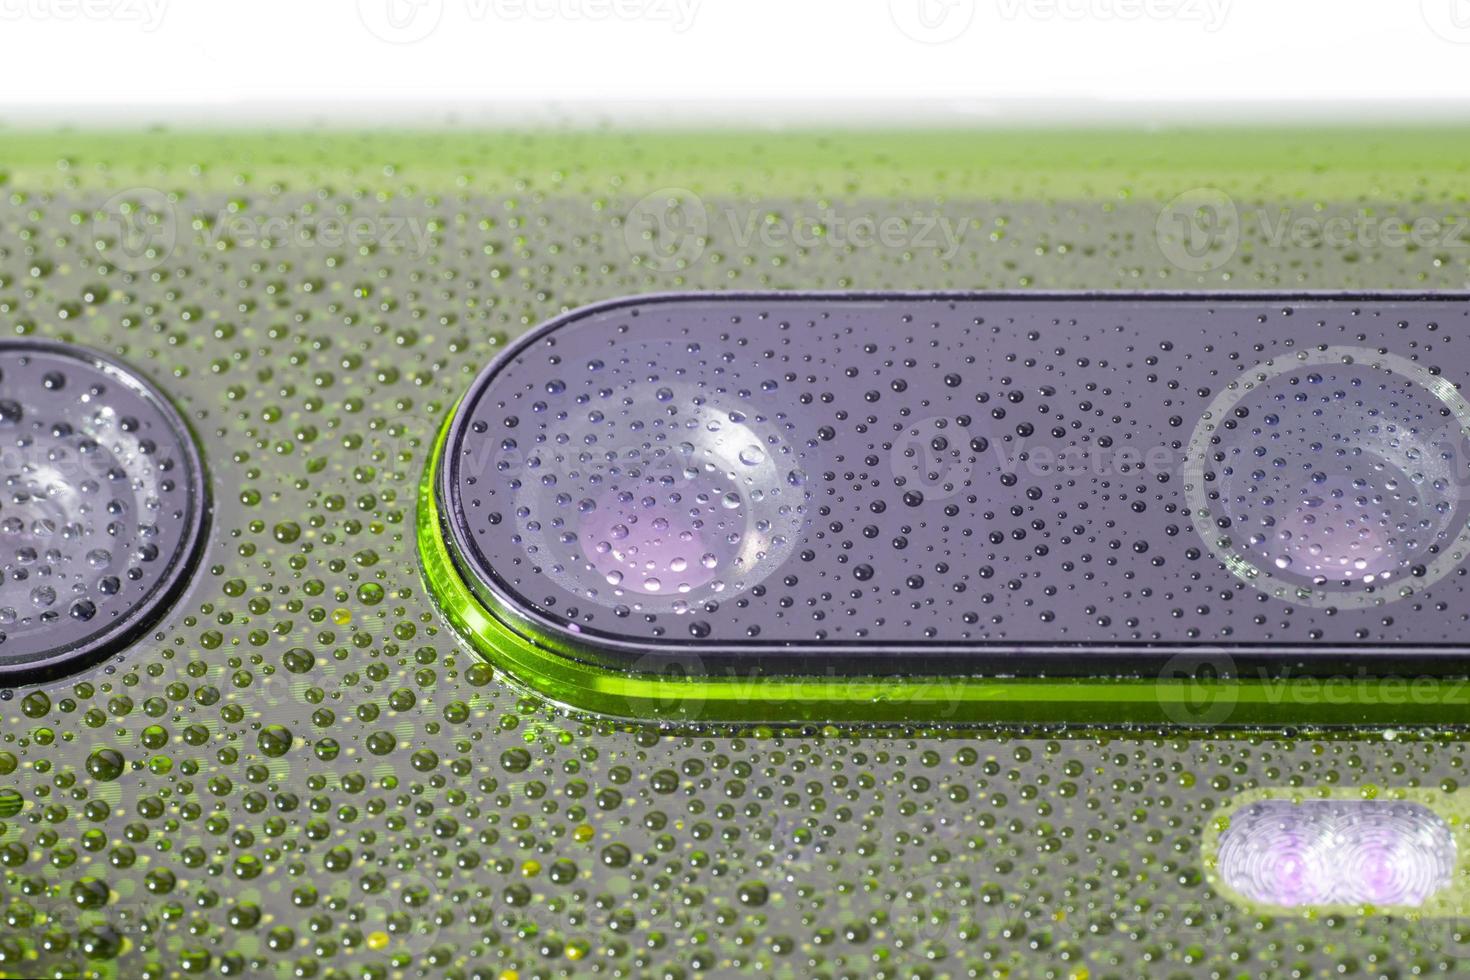 grön telefon kamera lins täckt med små vatten droppar - närbild med selektiv fokus och fläck foto